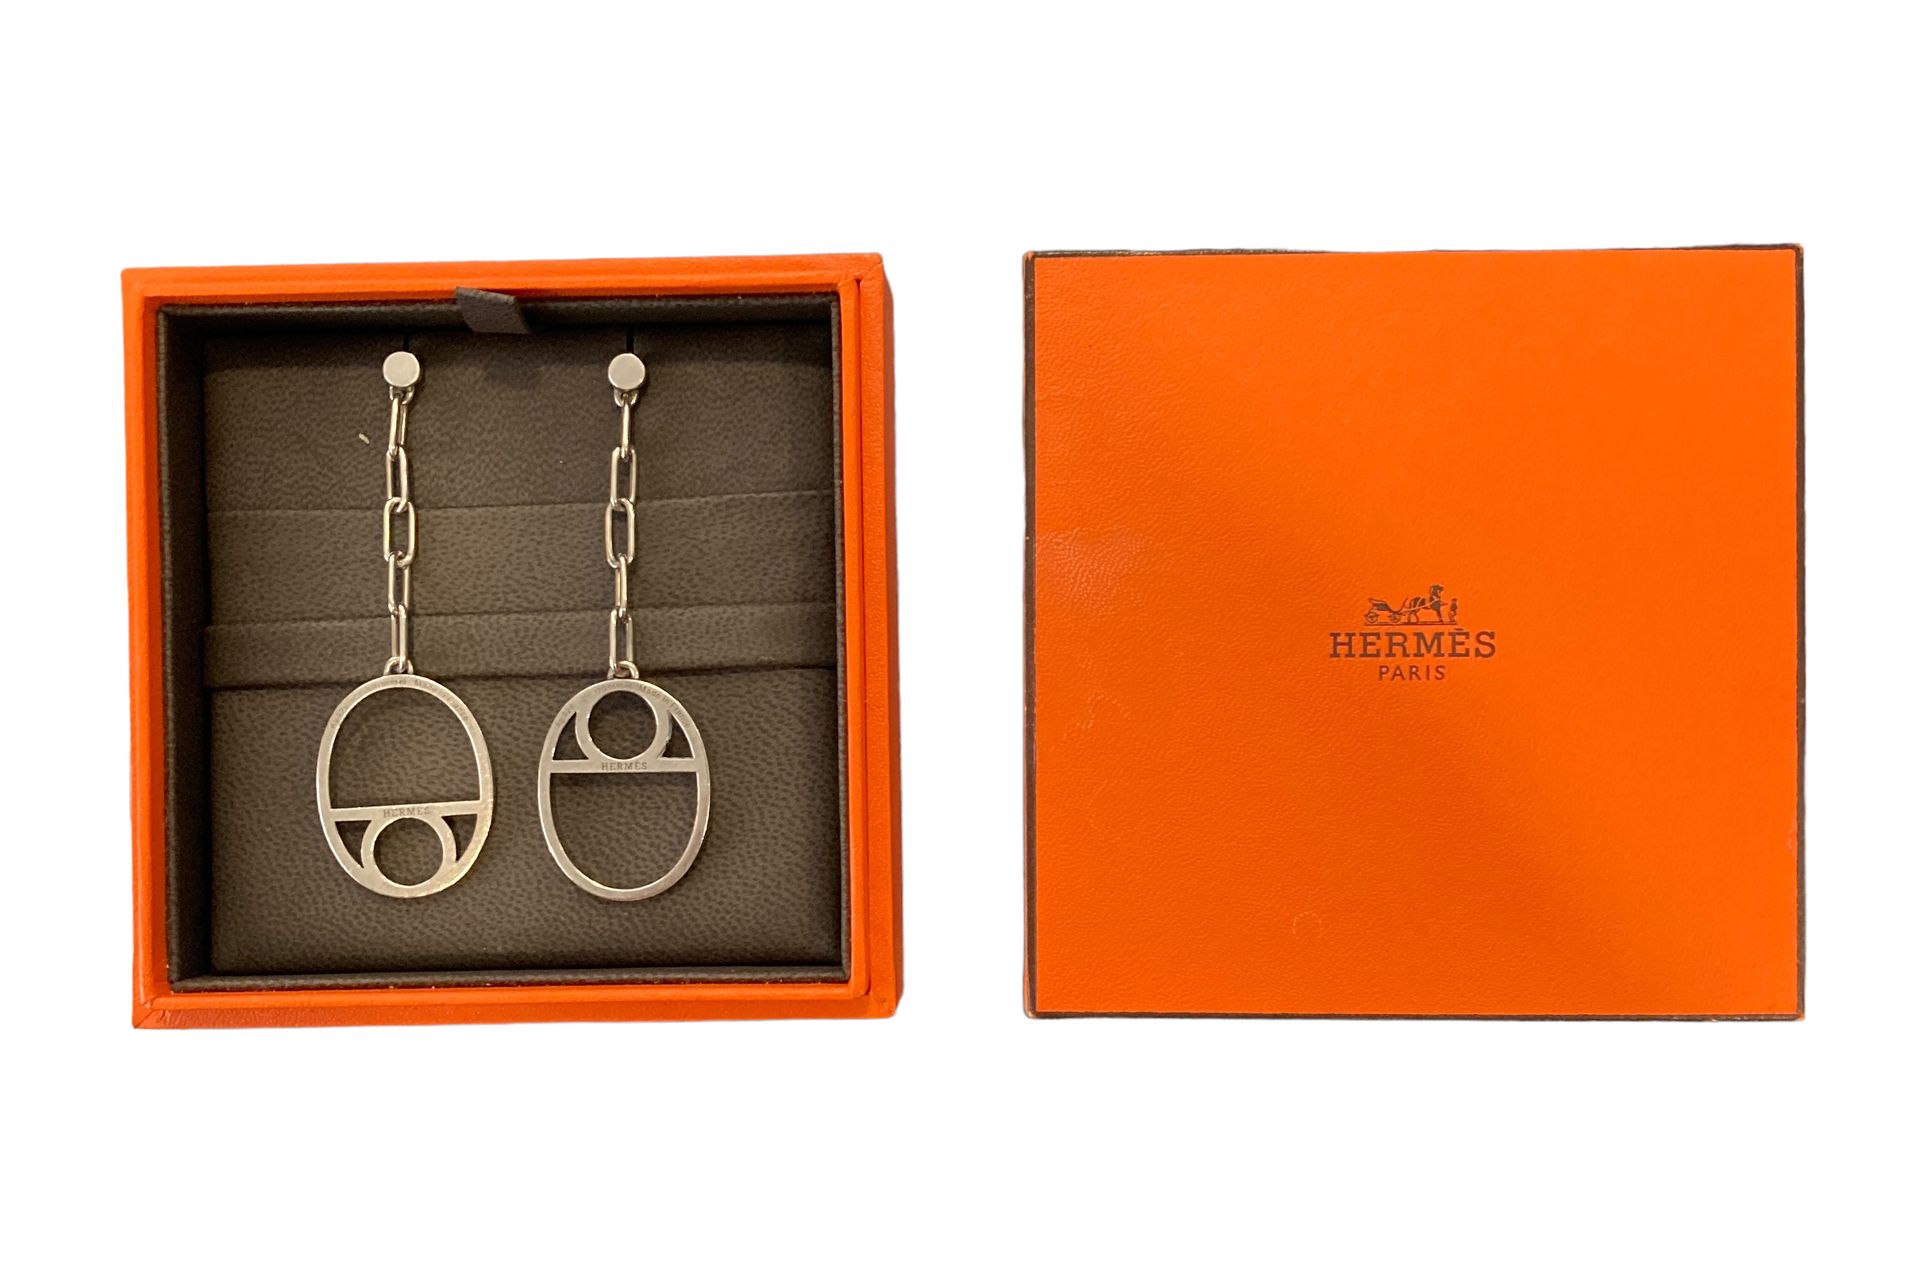 HERMÈS HERMES

Anchor chain model Game. 

Pair of earrings in 925°/00 silver. 

&hellip;